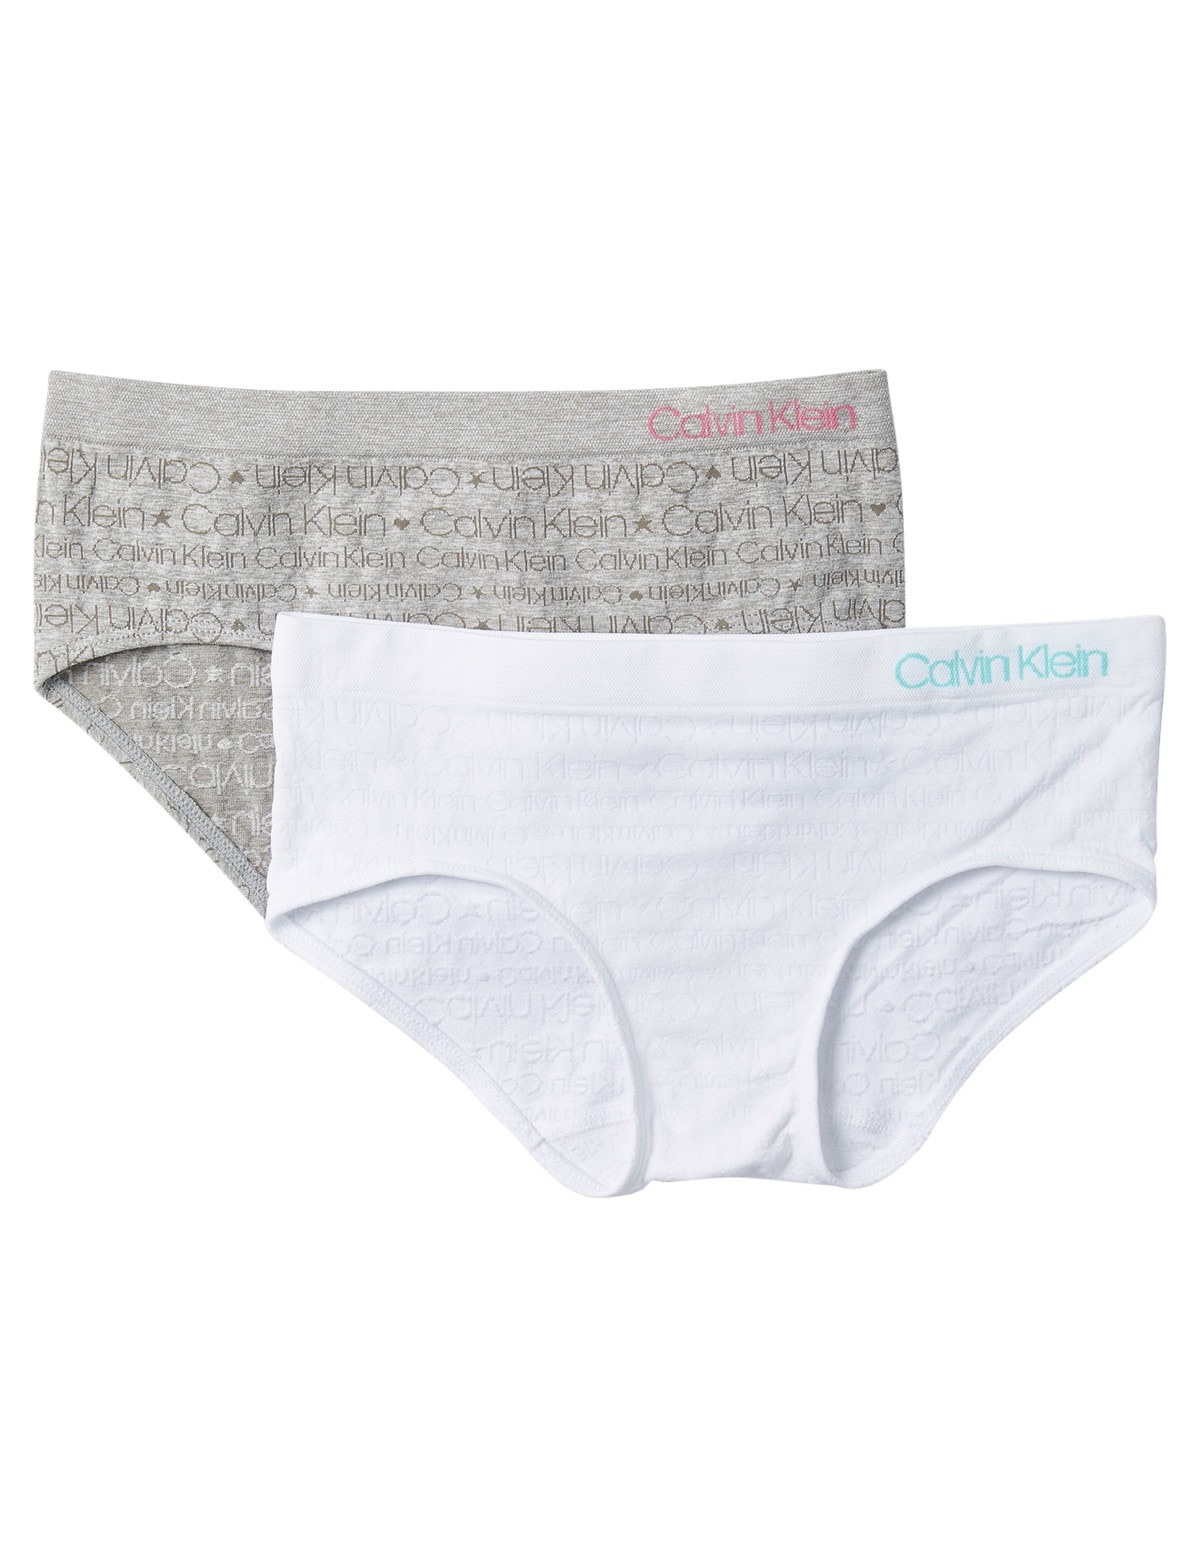 Calvin Klein Hipster Brief, 2-Pack, White & Grey - Underwear